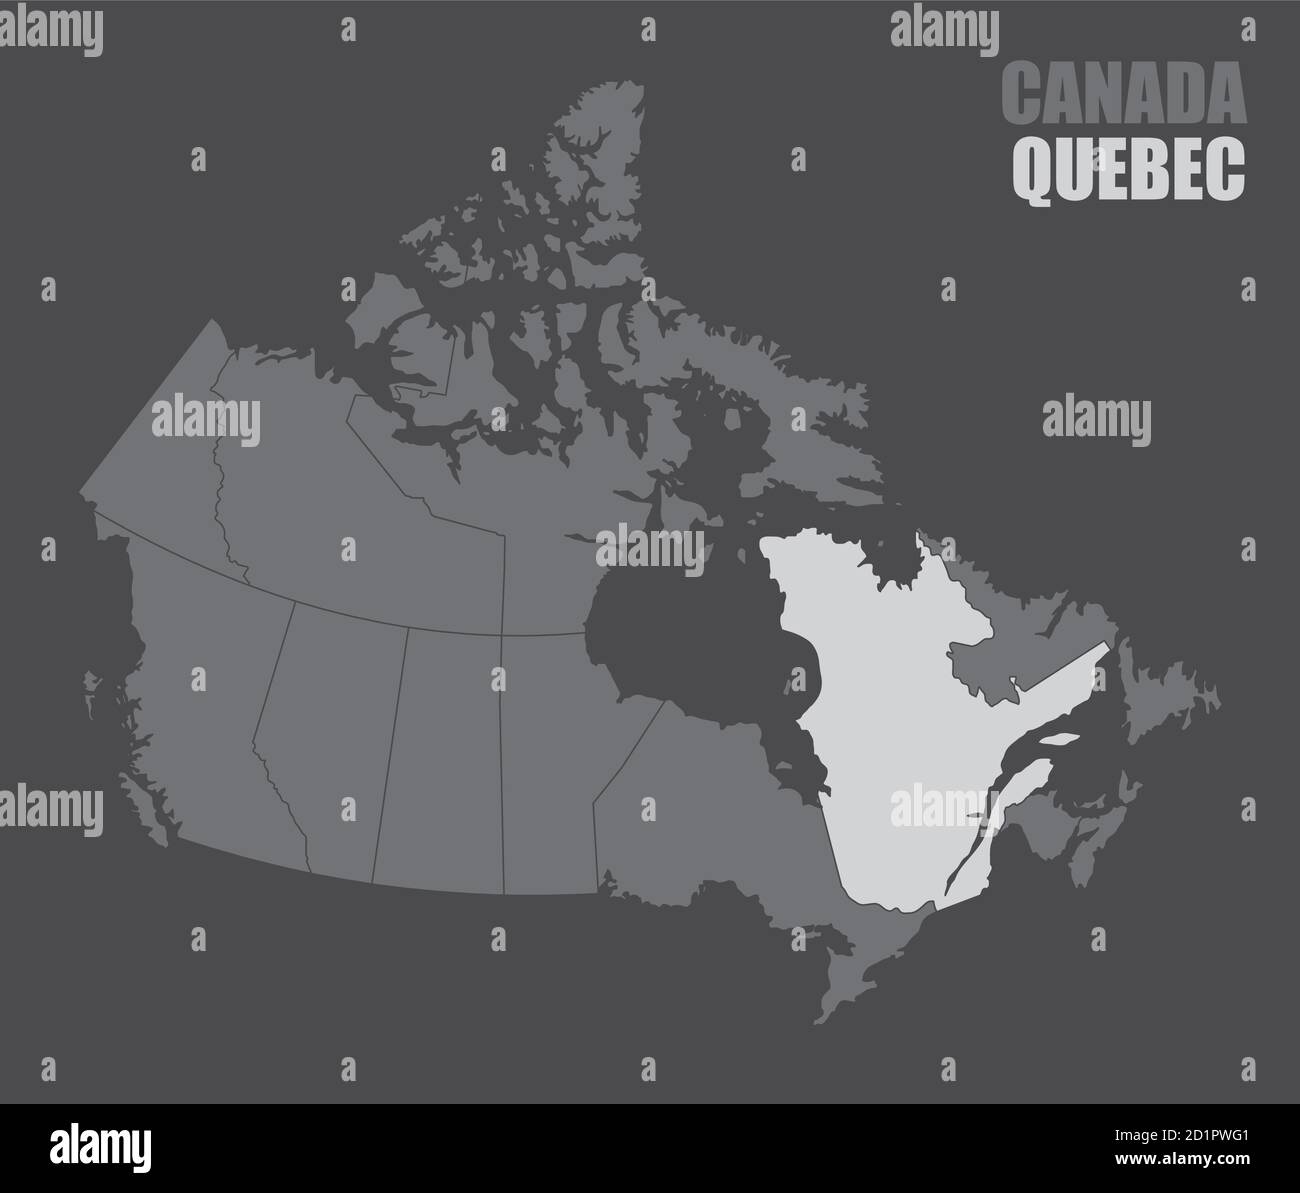 Canada Quebec map Stock Vector